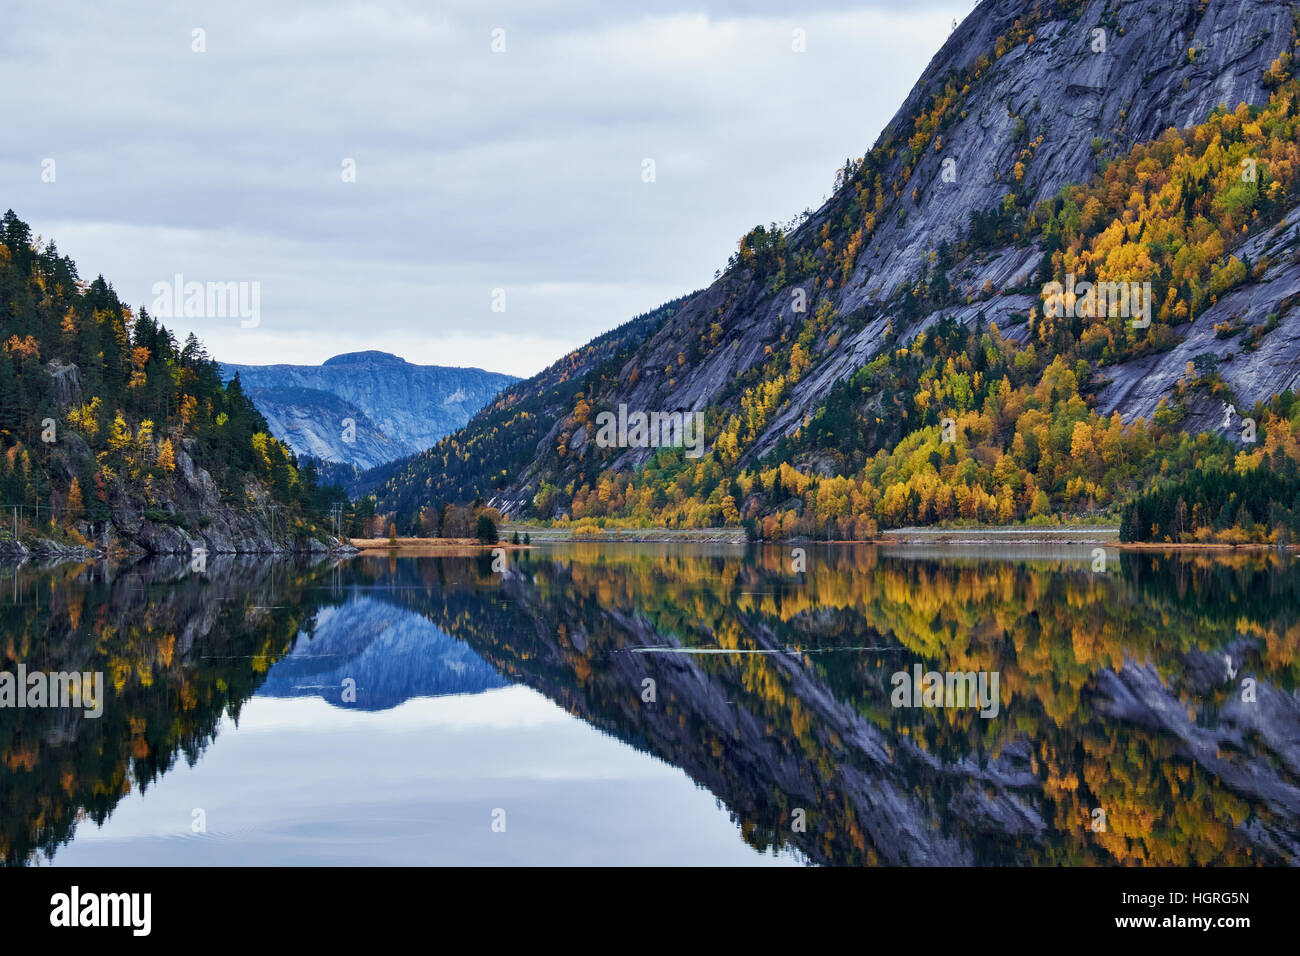 Du côté de la montagne avec la mise en miroir de la végétation de l'arbre complètement dans la mer calme dans un lac en Norvège Banque D'Images